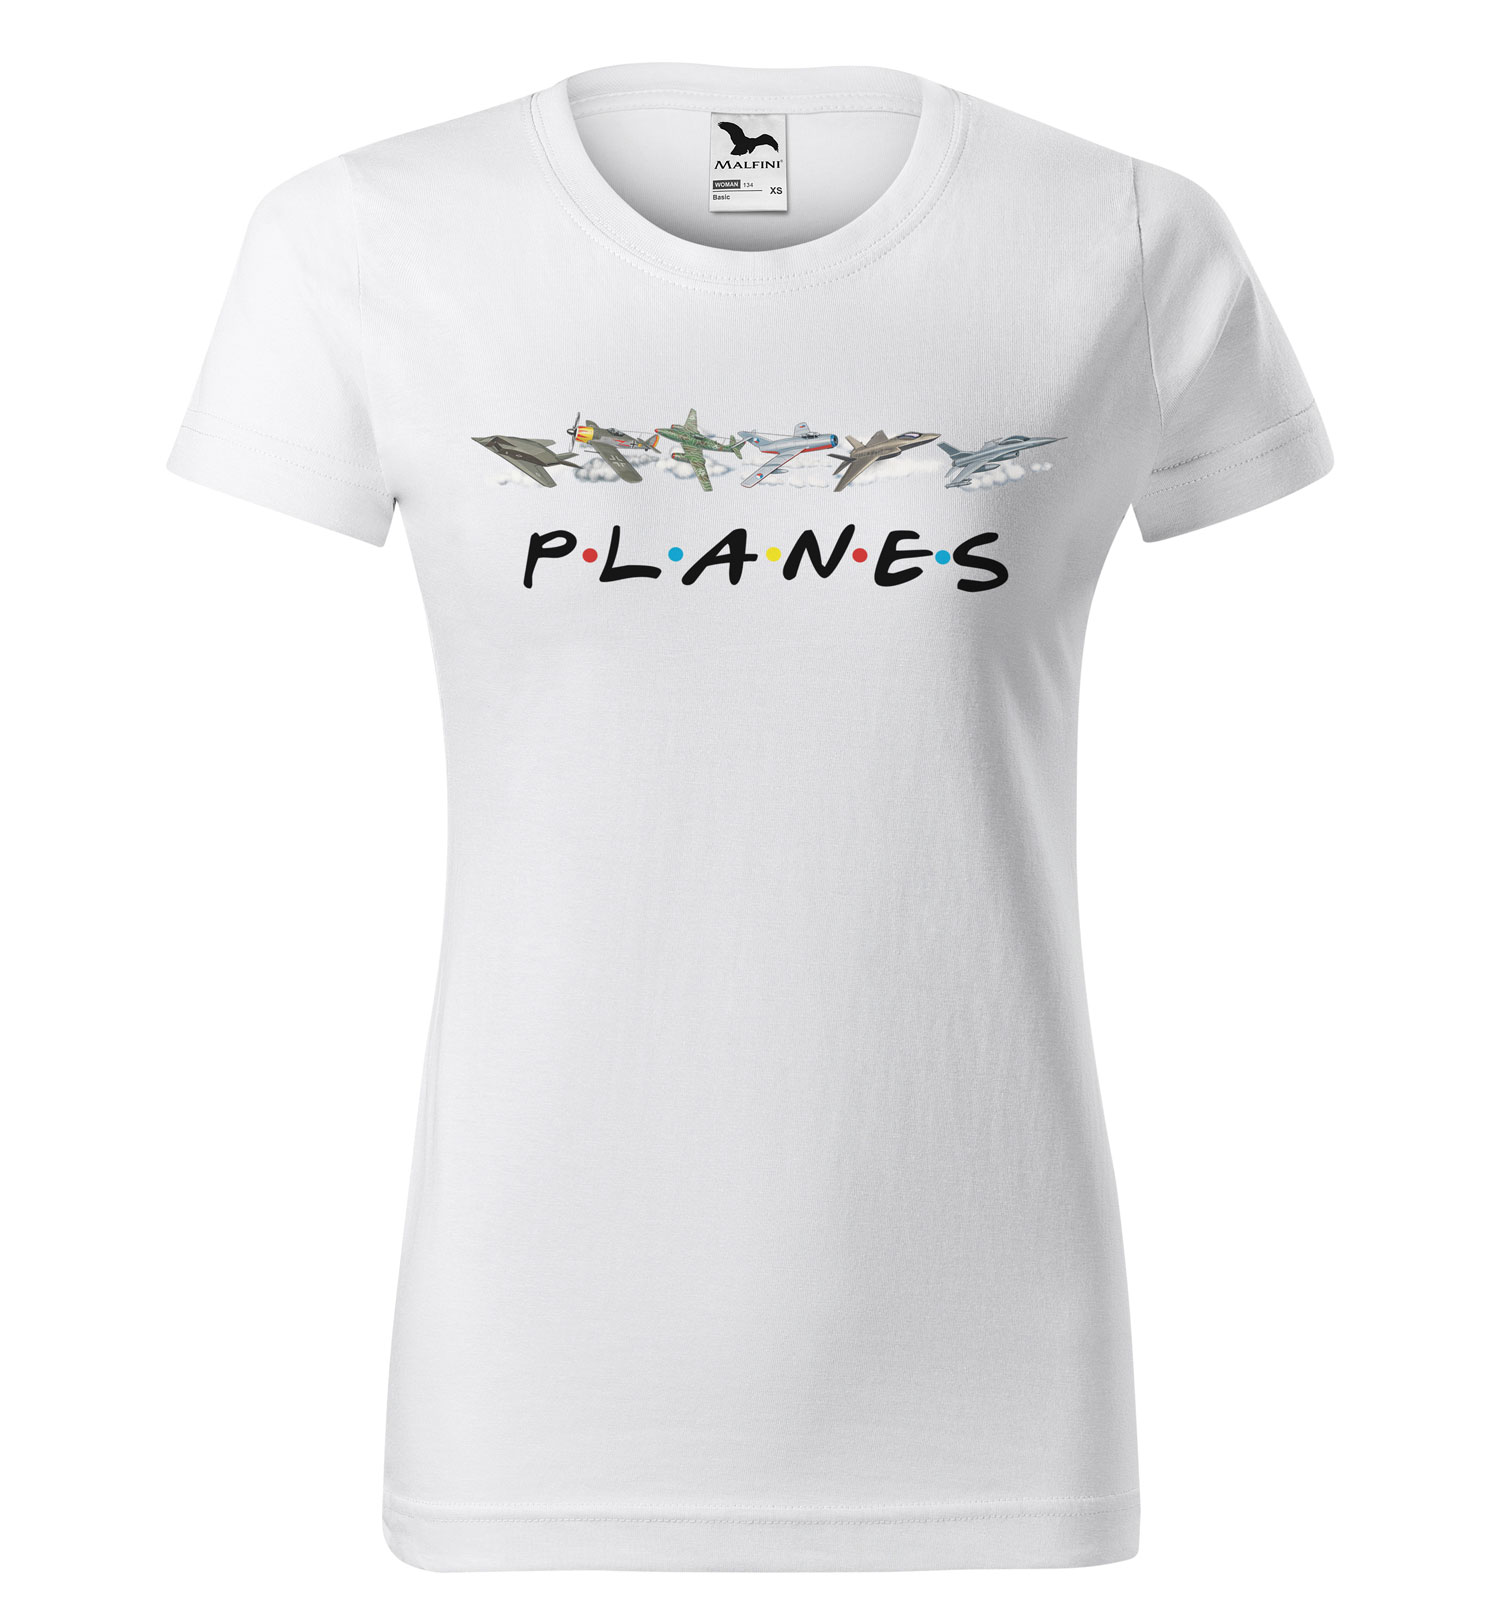 Tričko Planes (Velikost: XS, Typ: pro ženy, Barva trička: Bílá)